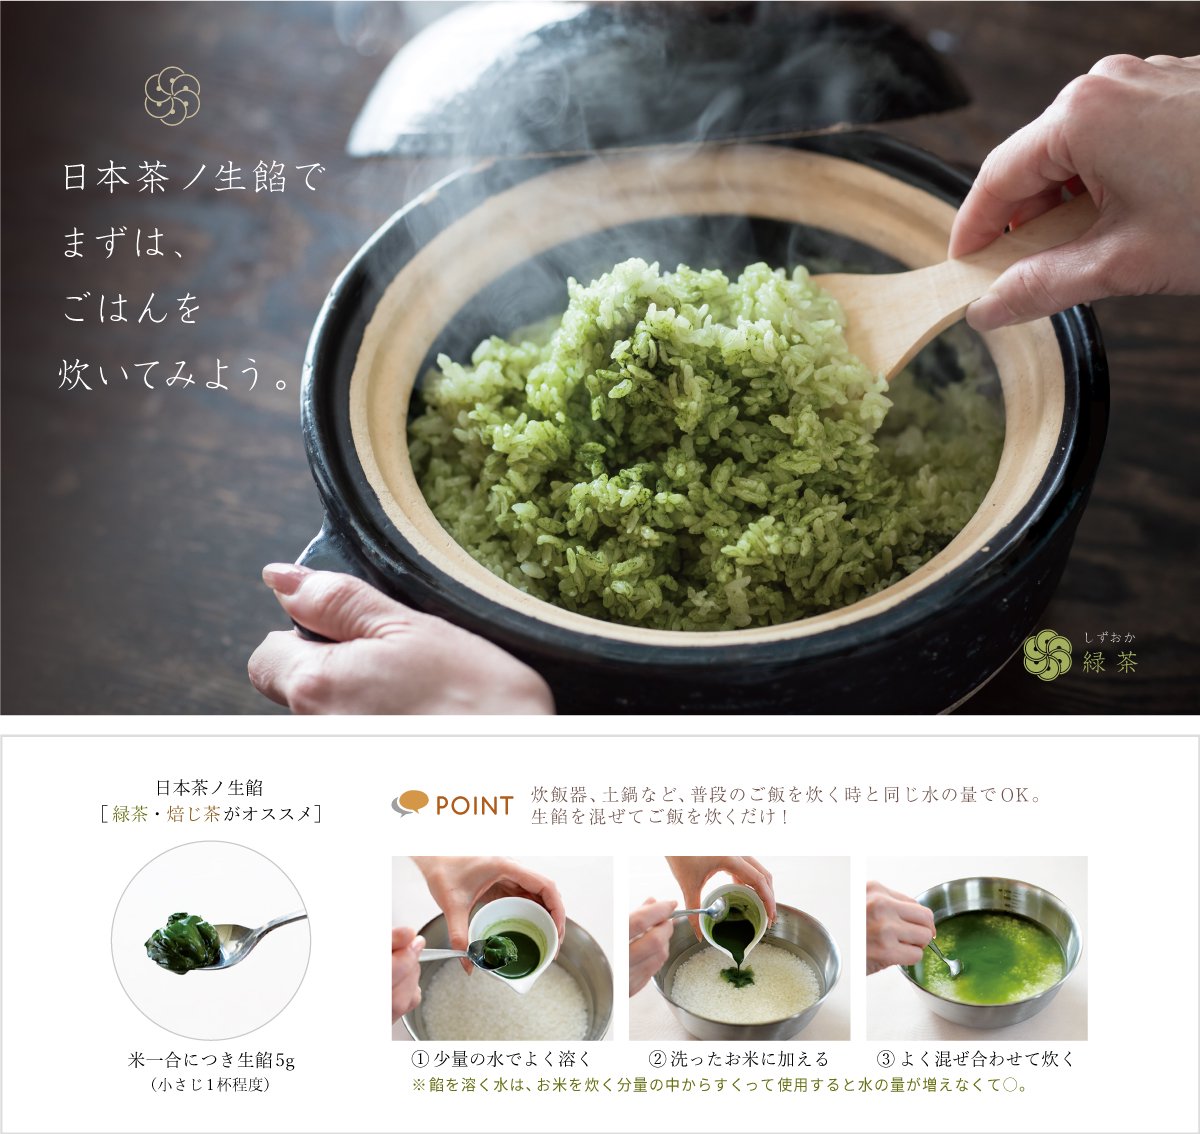 静岡産茶葉と酵母、ビタミンのみで特殊加工しペースト状にしたナチュラルな日本茶ノ生餡、しずおか緑茶ノ生餡。おいしい日本茶研究所。